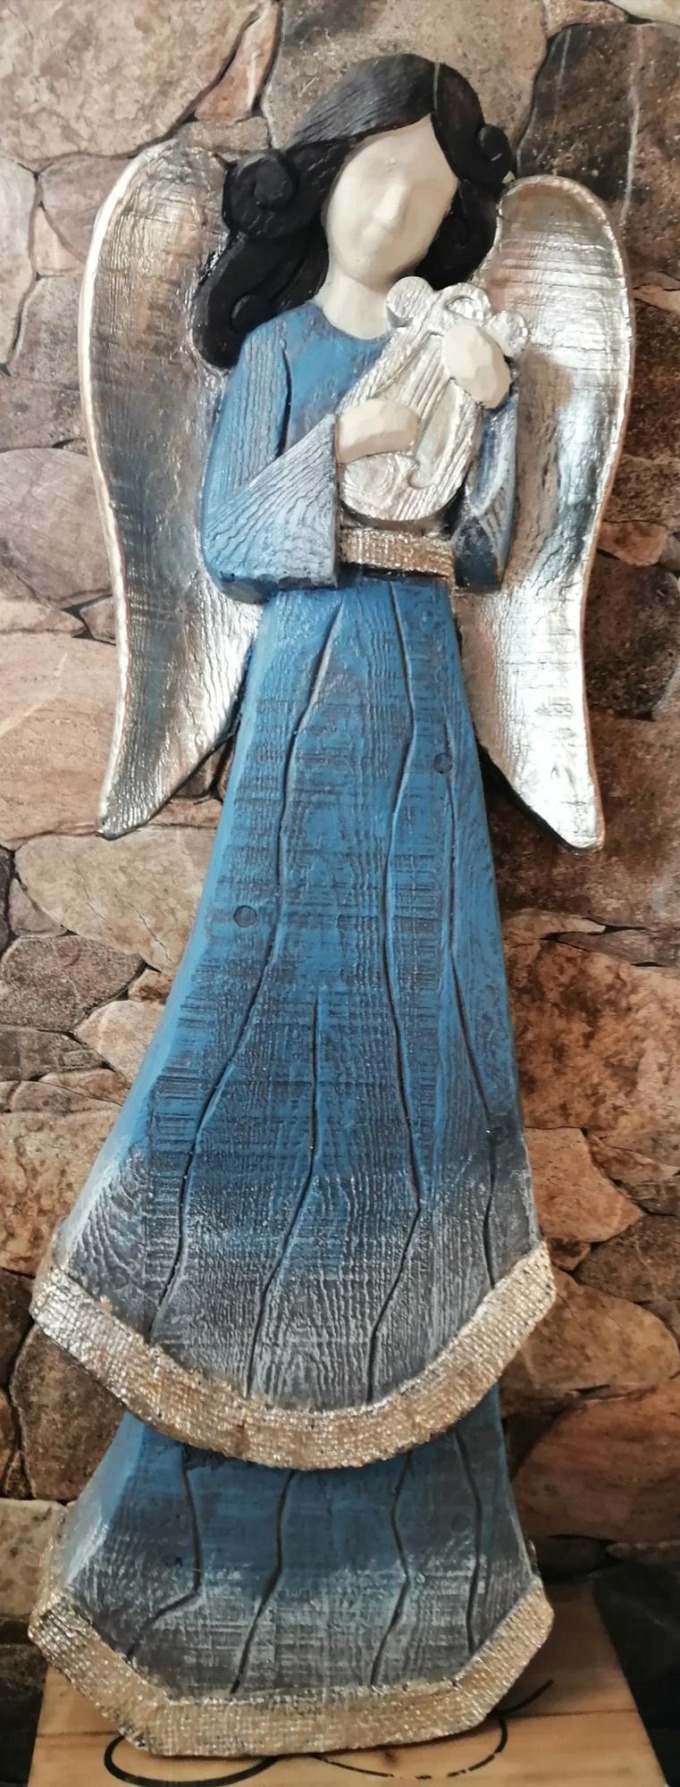 Socha anděl 75cm vintage modrý s patinou - Krásná socha anděla ve vintage modrém provedení s patinou o výšce 75cm